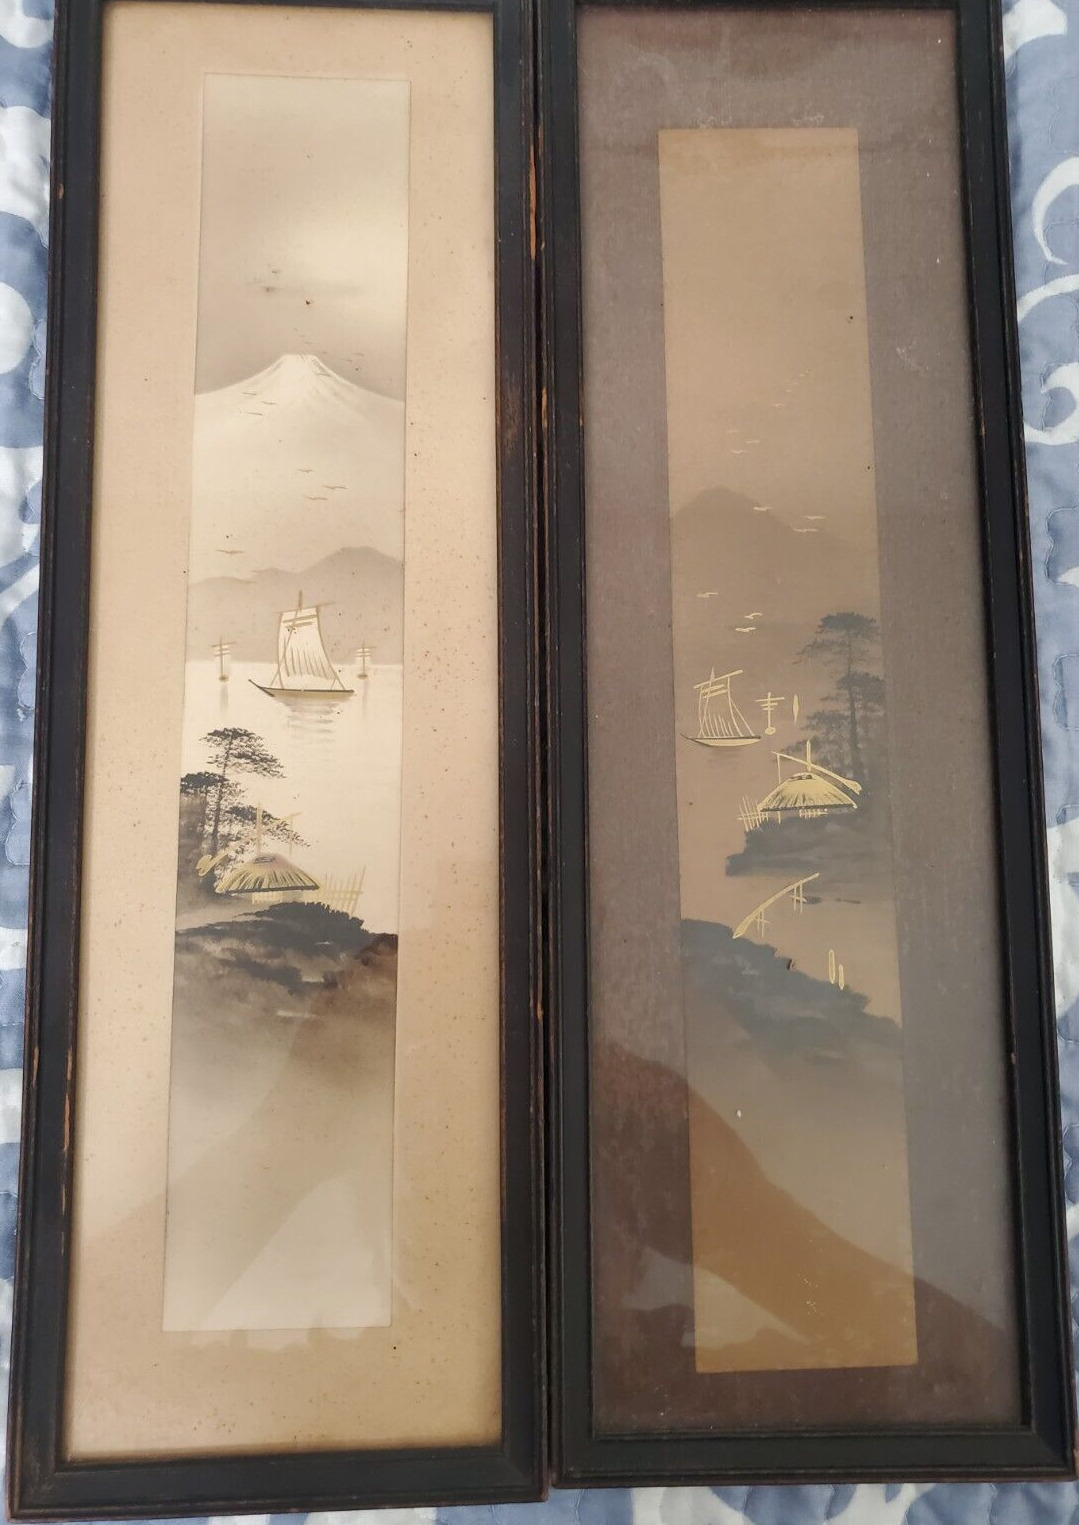 2 x Vintage Japanese Landscape Portrait Birds/Huts/Sailing Vessel/ Mt. Fuji